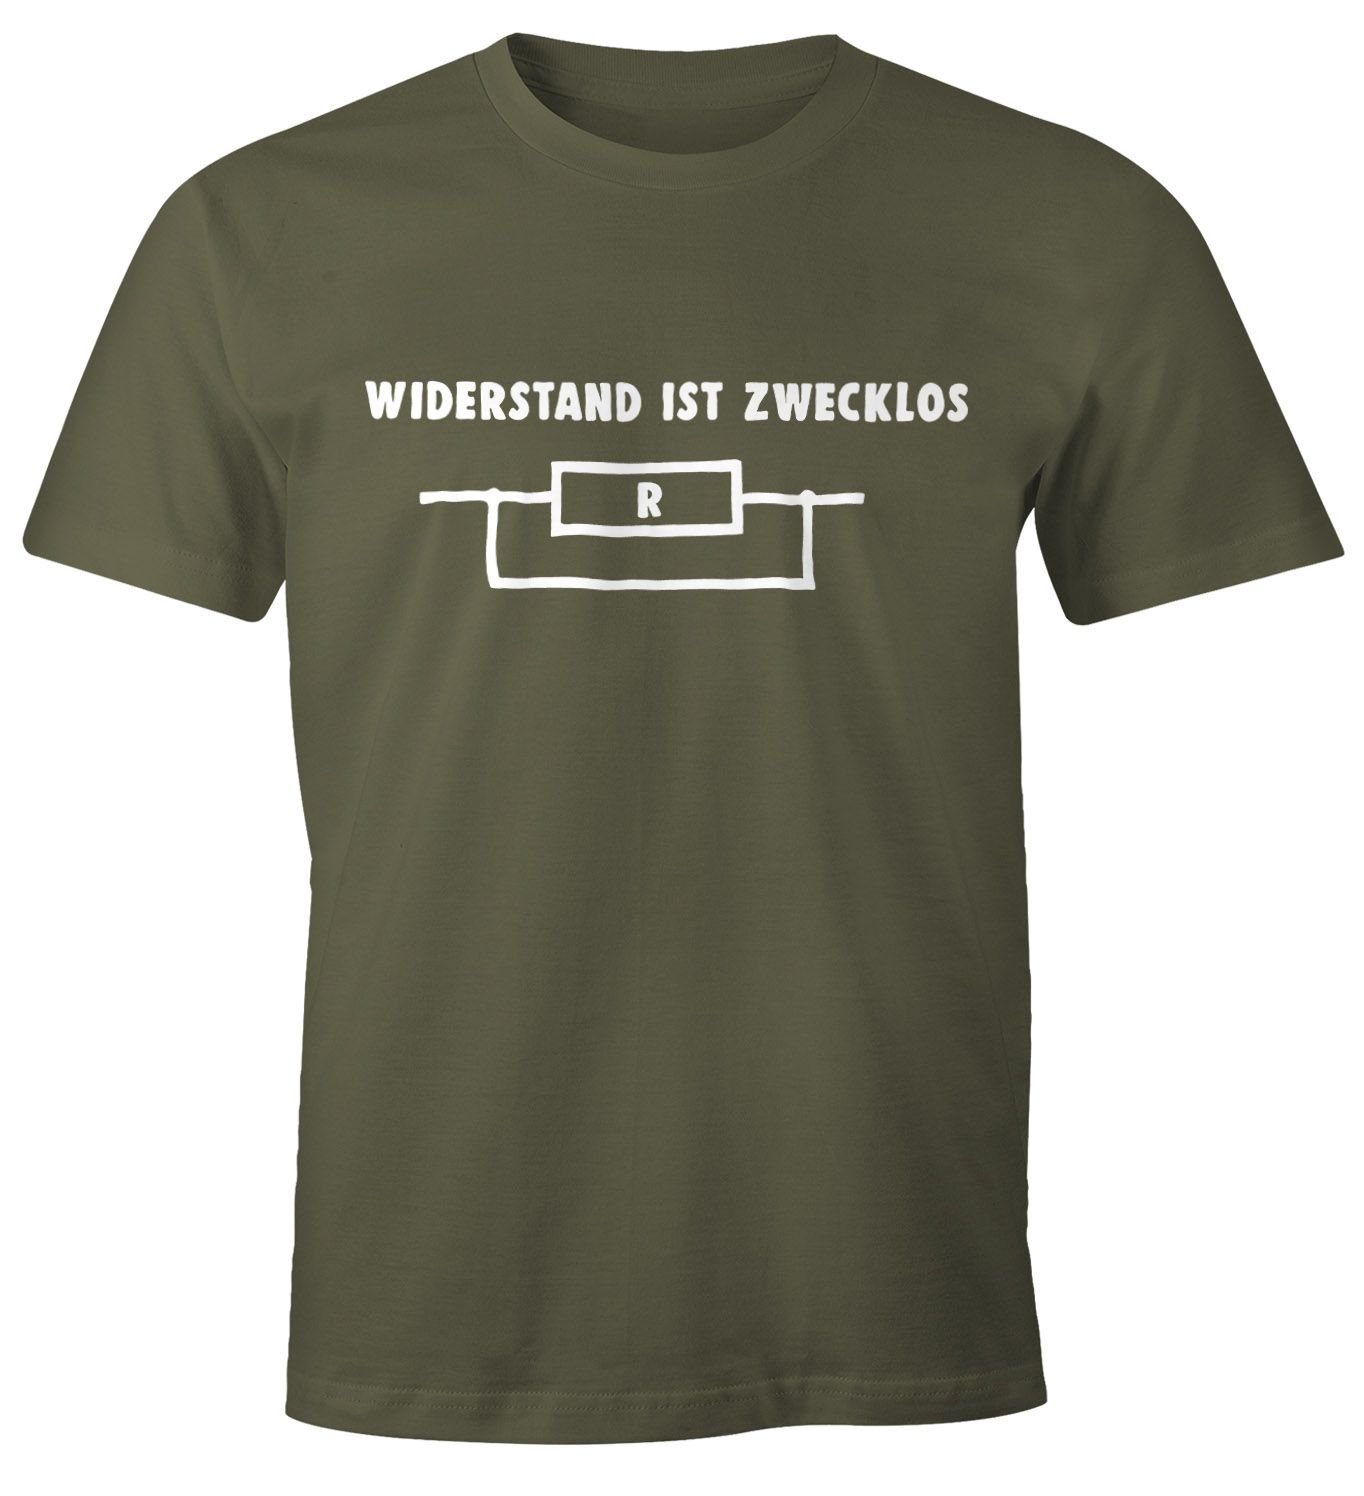 MoonWorks Print-Shirt ist Herren T-Shirt Moonworks® grün zwecklos Widerstand Shirt Print mit